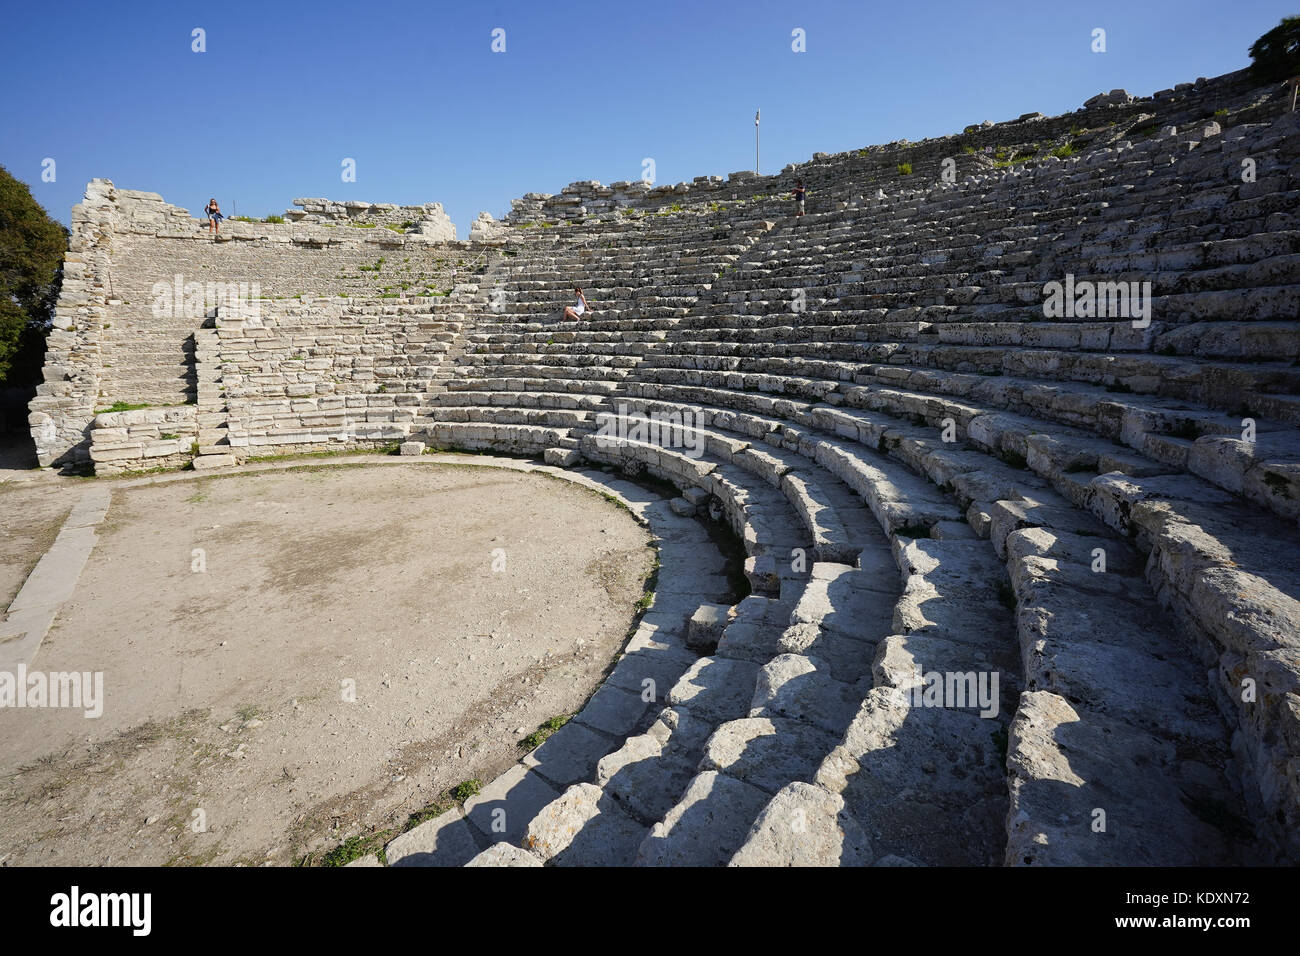 L' anfiteatro romano al sito storico di Segesta. da una serie di foto di viaggio in Sicilia, Italia. photo Data: sabato, 30 settembre 2017. p Foto Stock